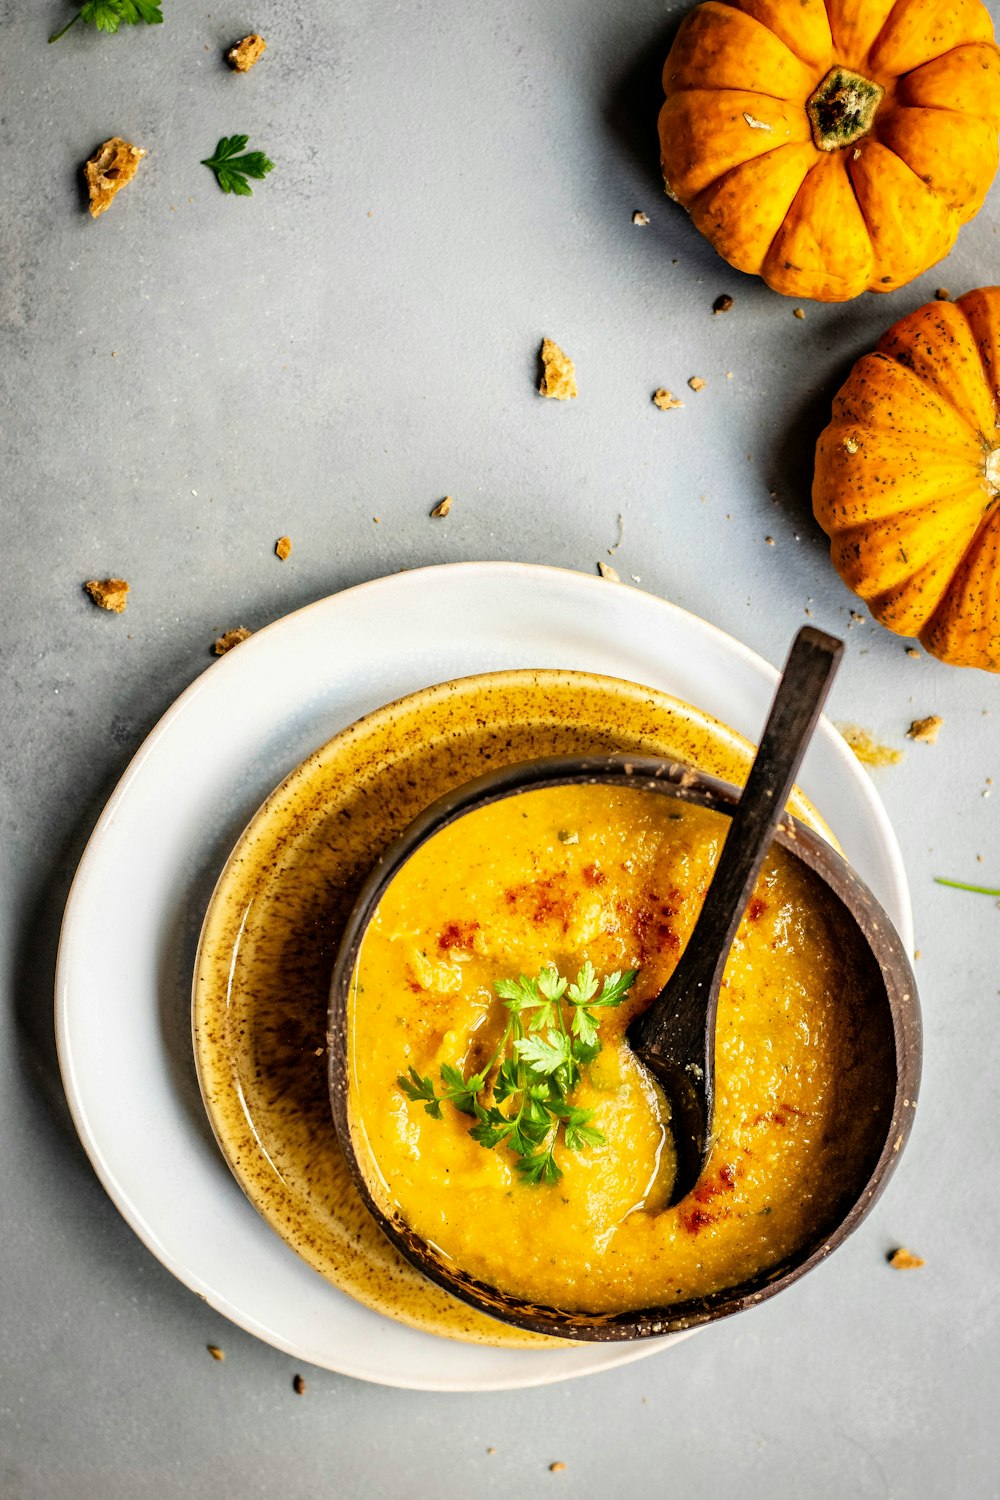 bowl of soup near two pumpkins